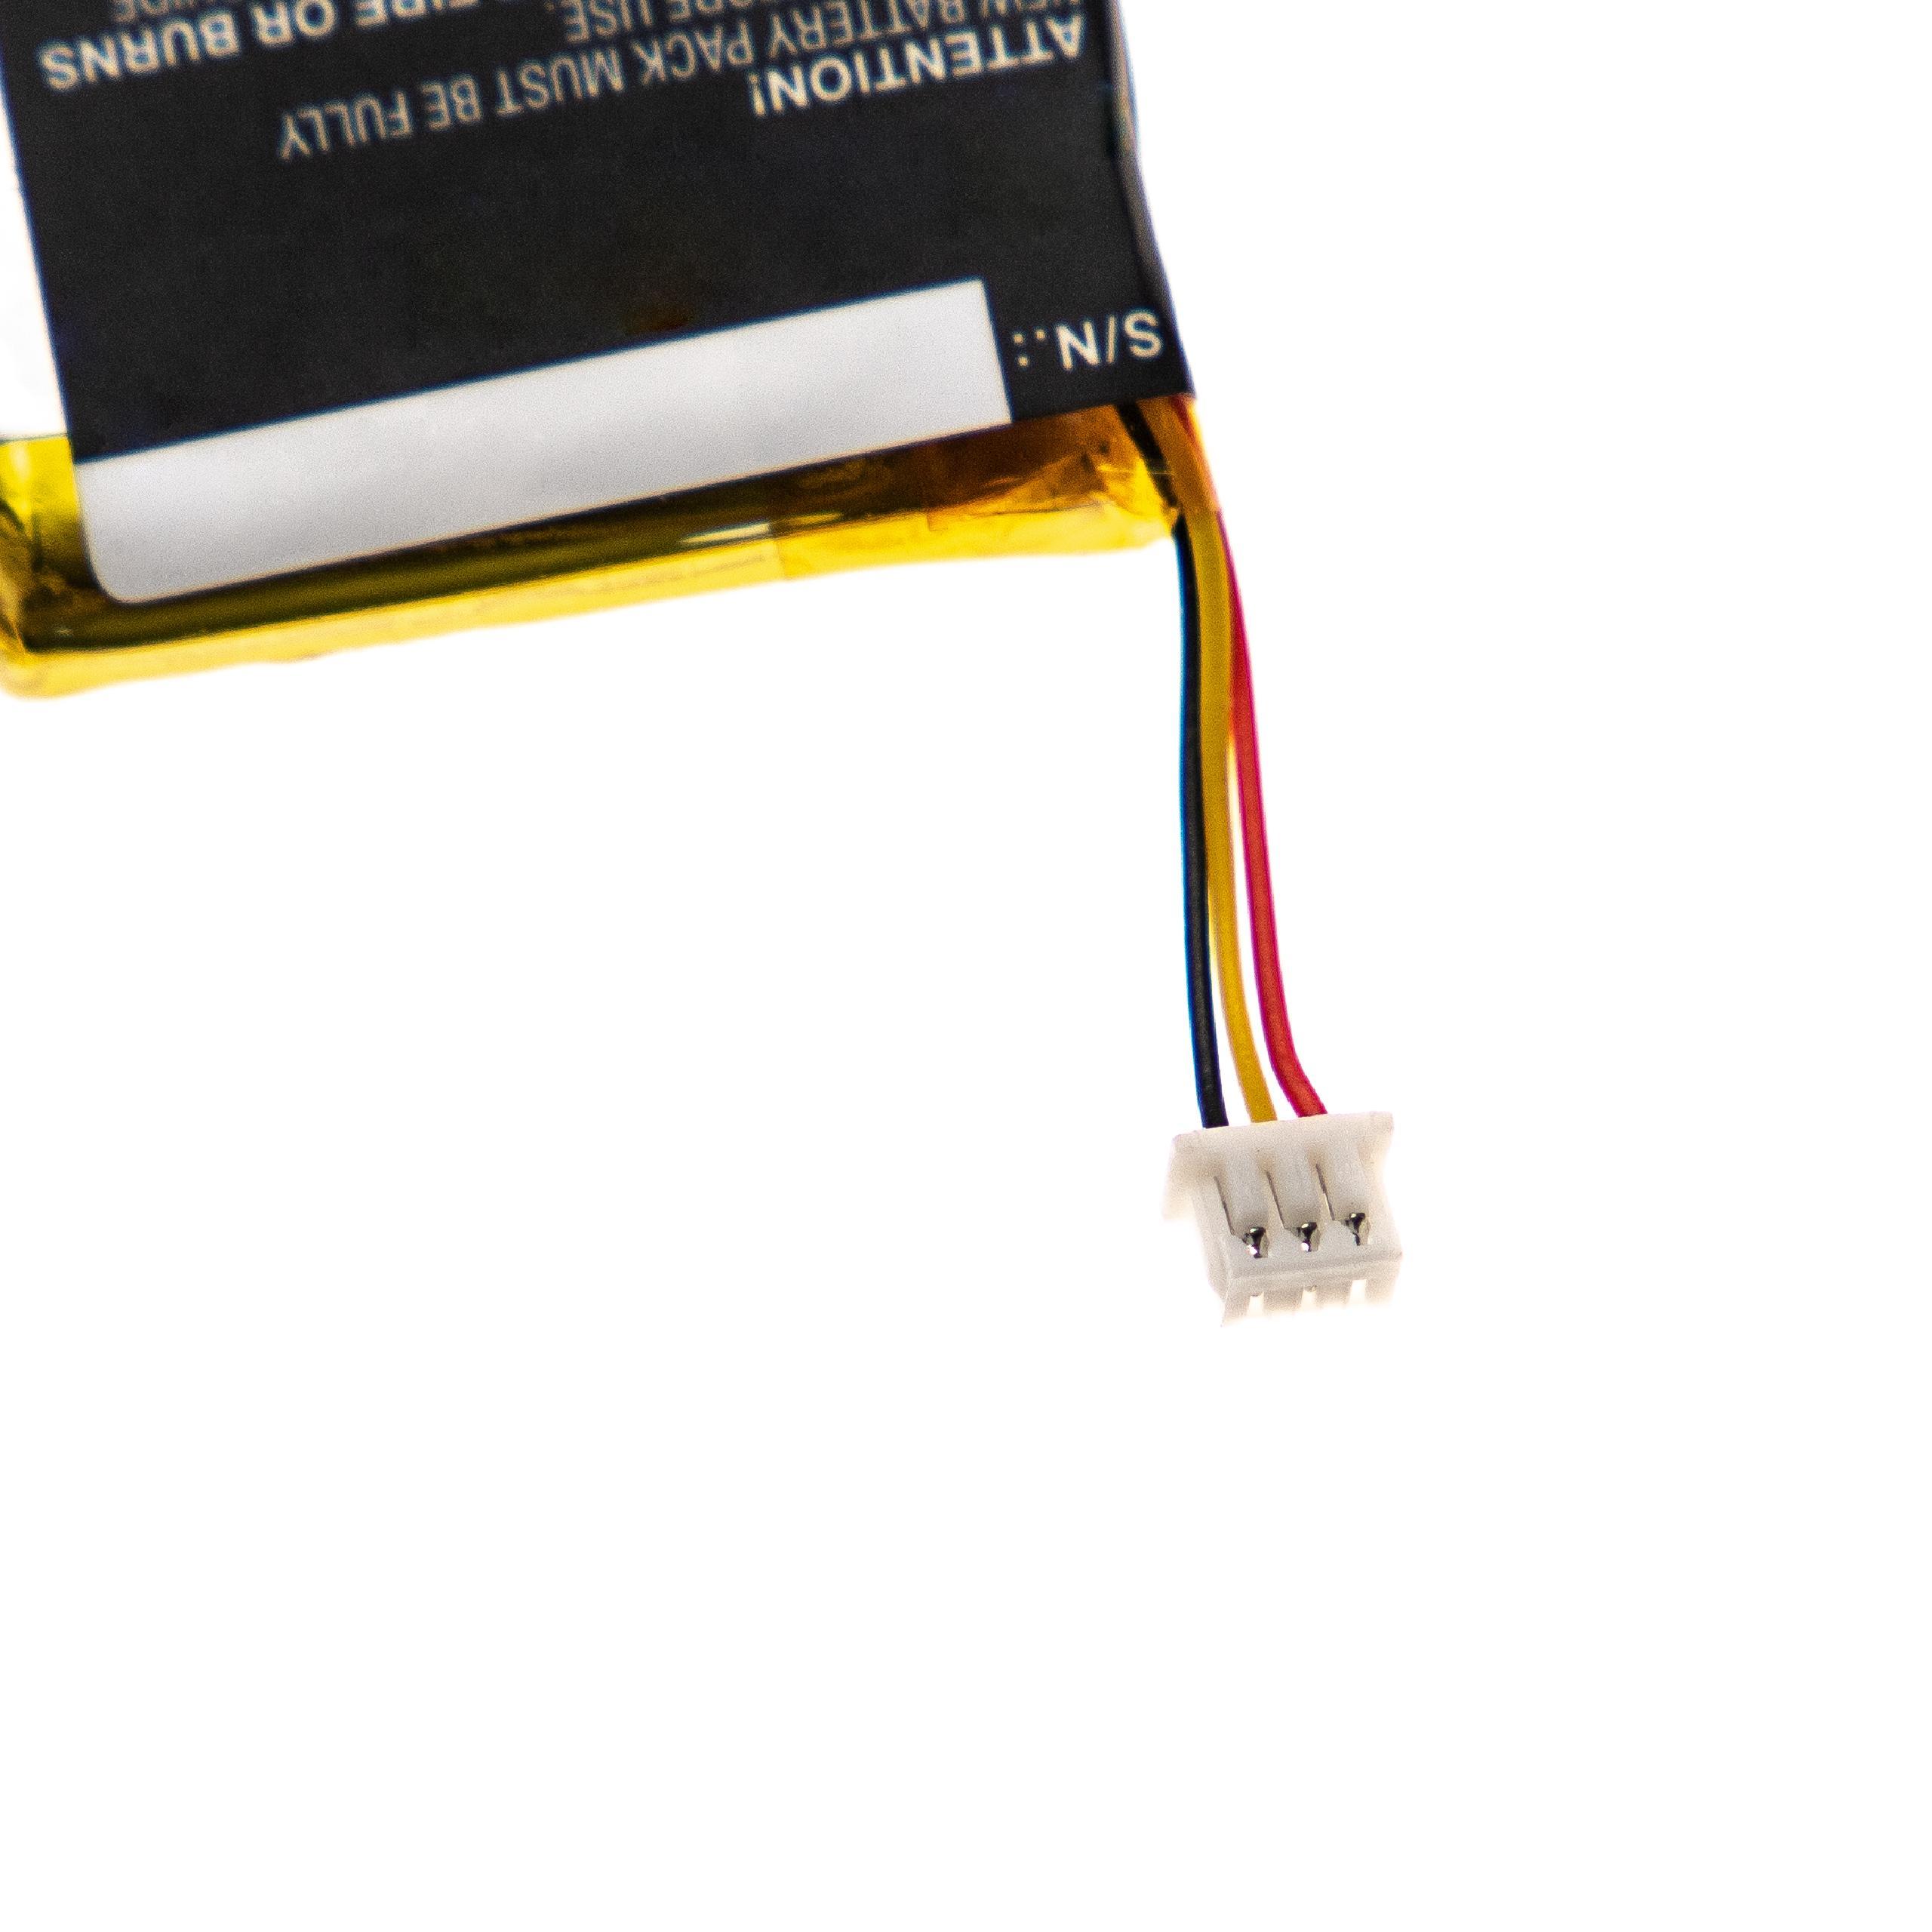 VHBW kompatibel mit Plantronics Savi W8220, Li-Polymer 8220 - Headset, Volt, Akku 650 3.7